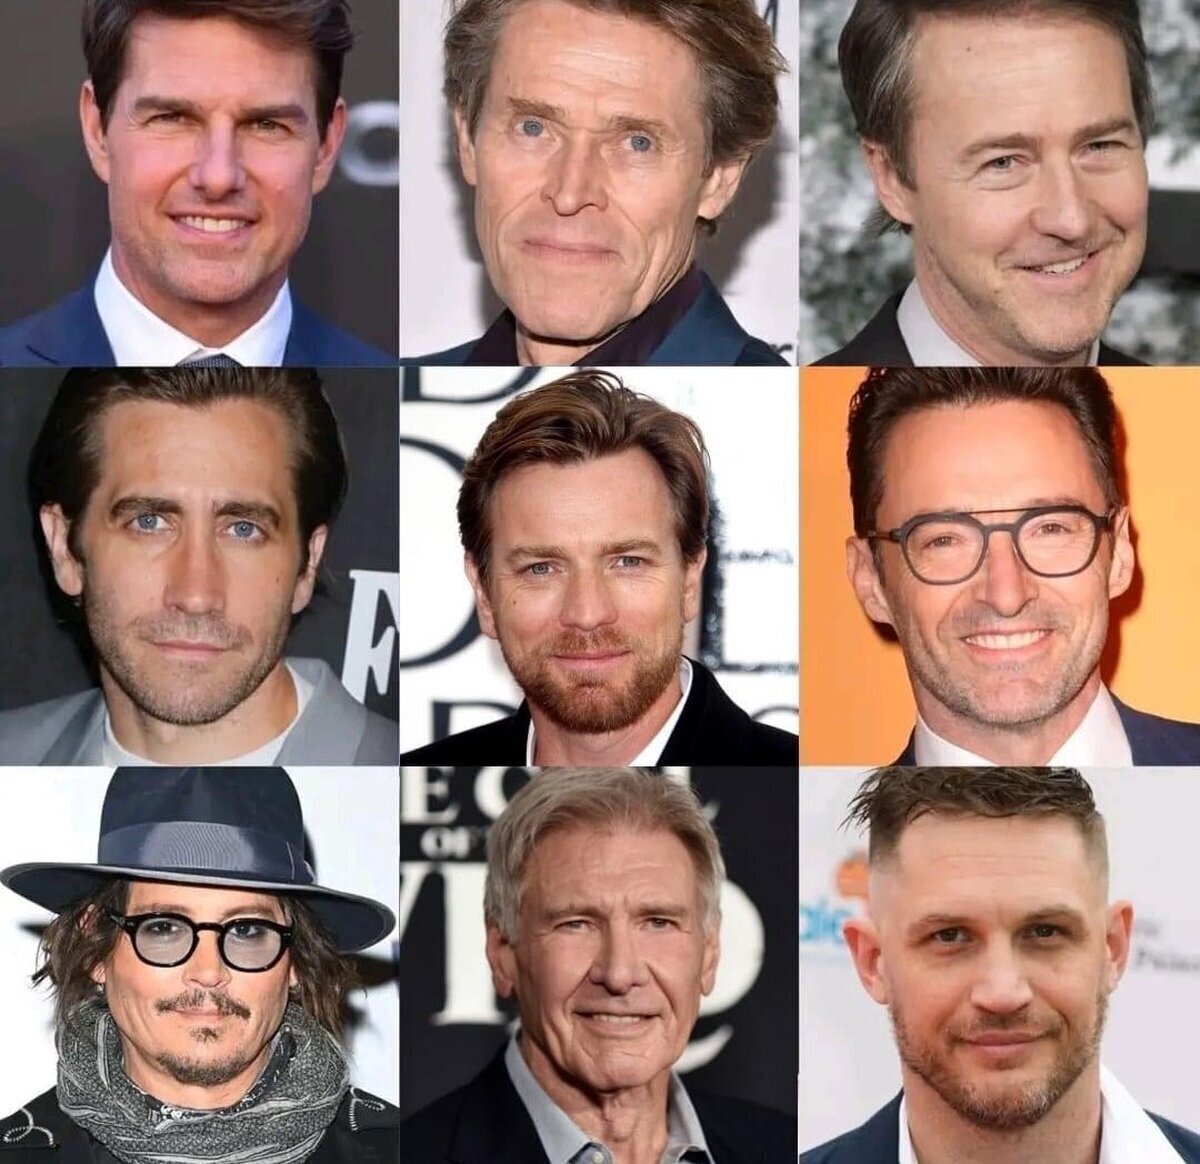 Hasta el momento, ninguno de estos actores ganó un Oscar.Se me hace un poco injusto porque pienso que todos deberían ser merecedores de ese reconocimiento.